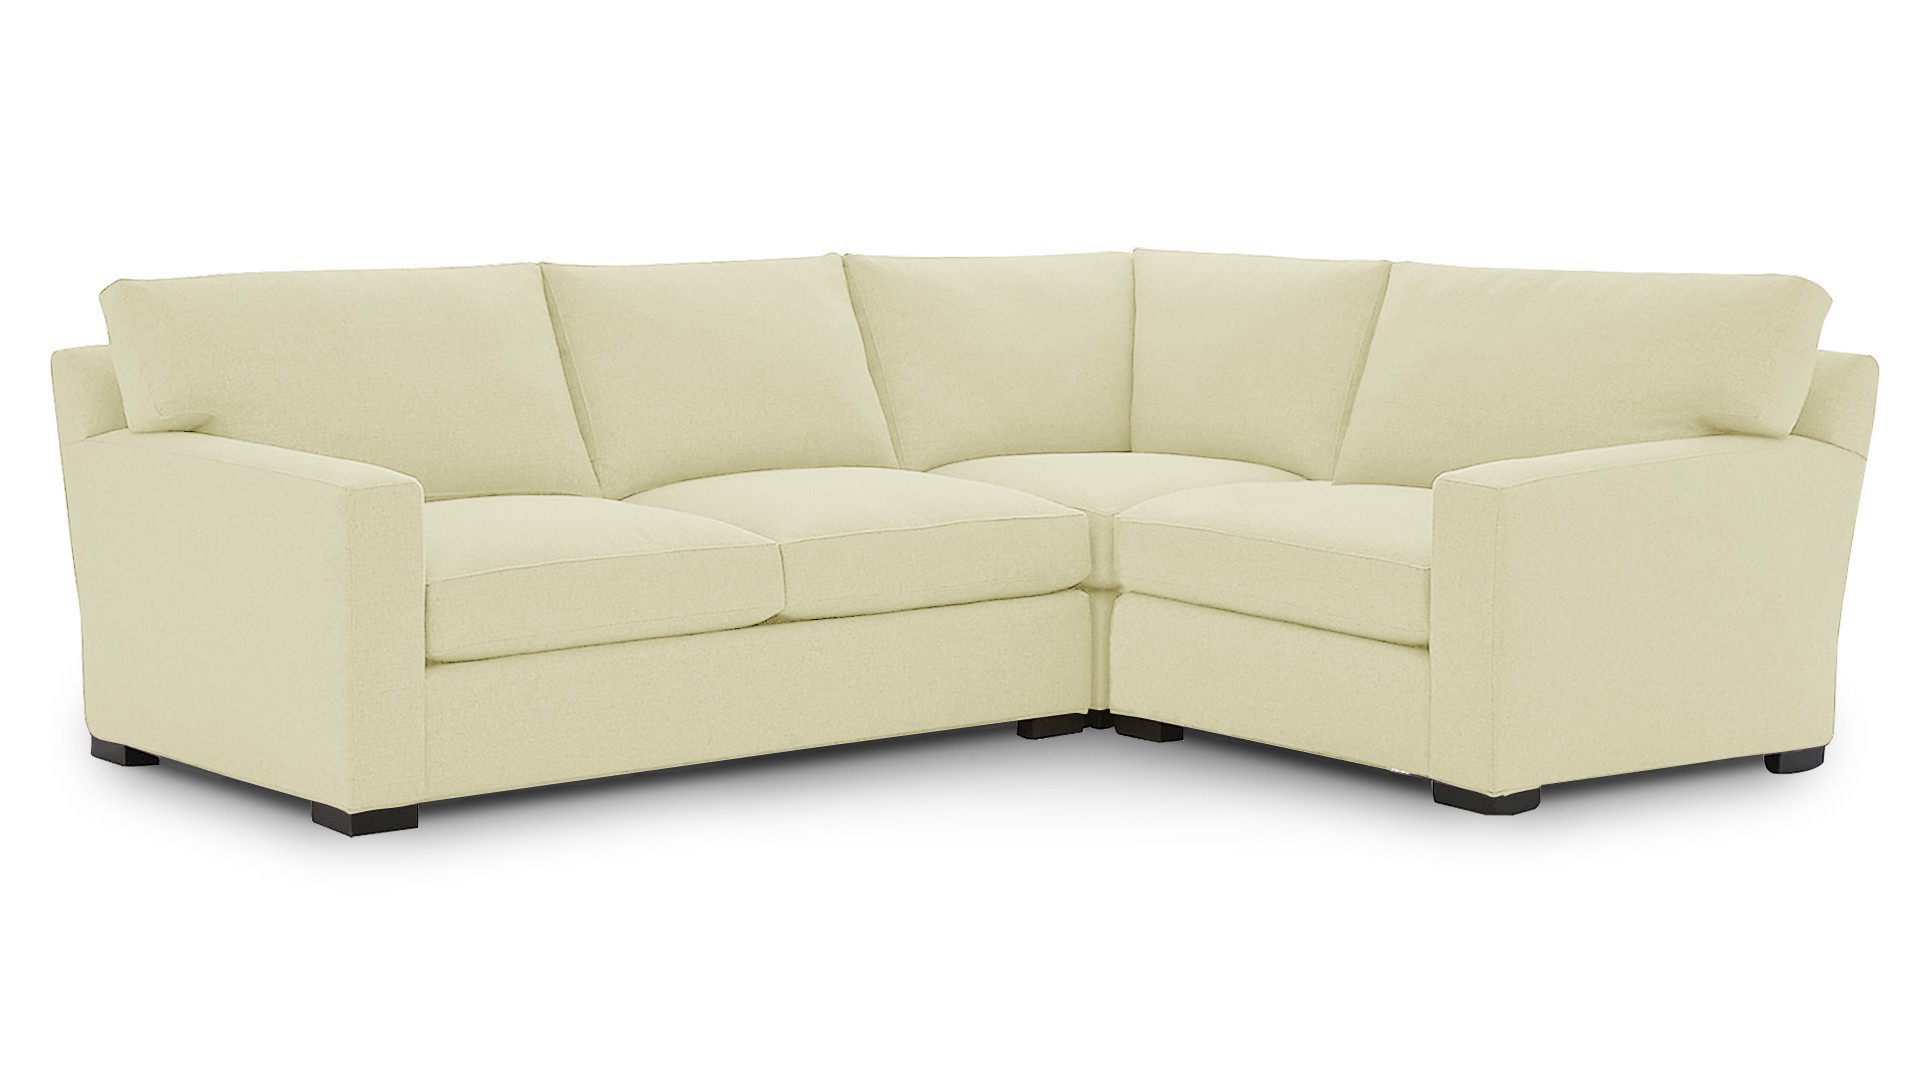 Угловой диван - аналог IKEA KIVIK, 221х153х90 см, бежевый